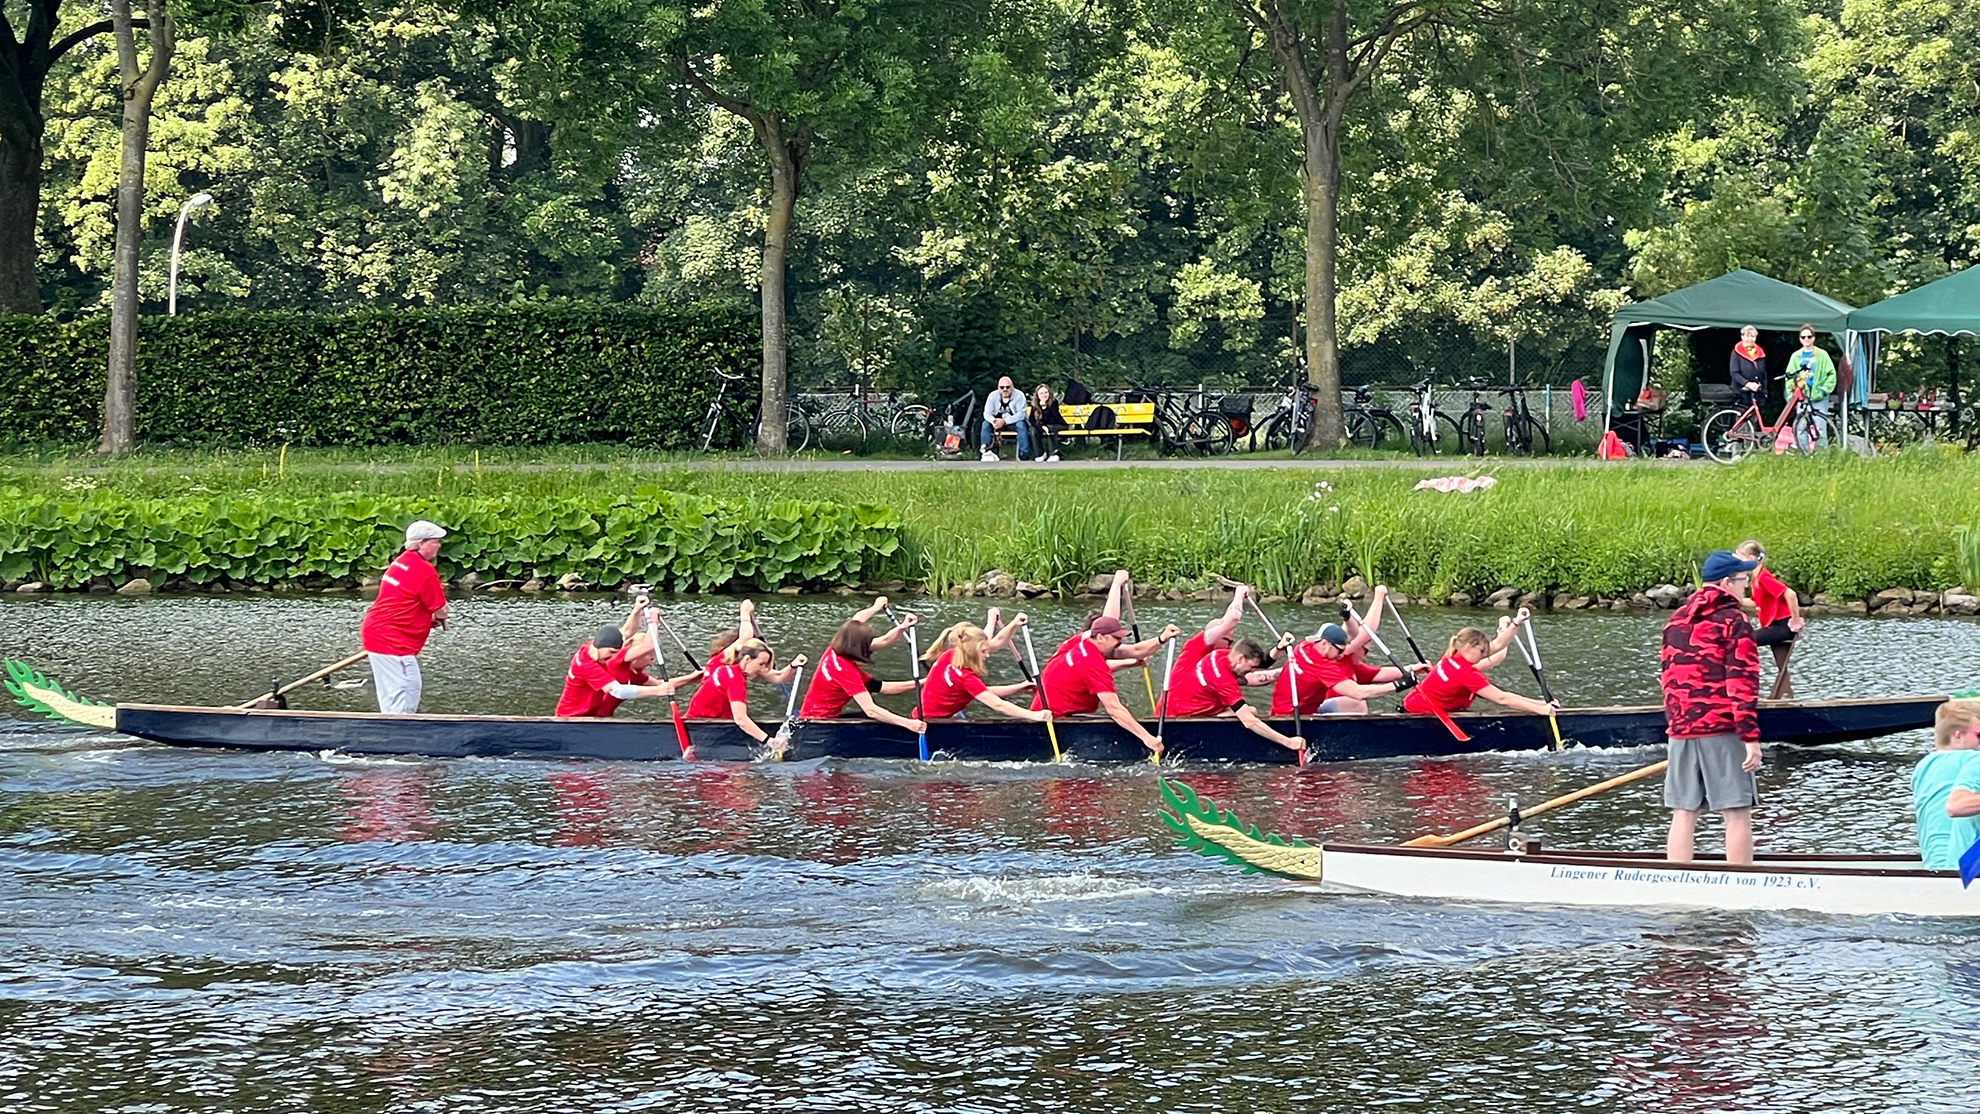 Mehrere Menschen mit roten Shirts sitzen in einem Boot und tauchen die Paddel in Wasser.